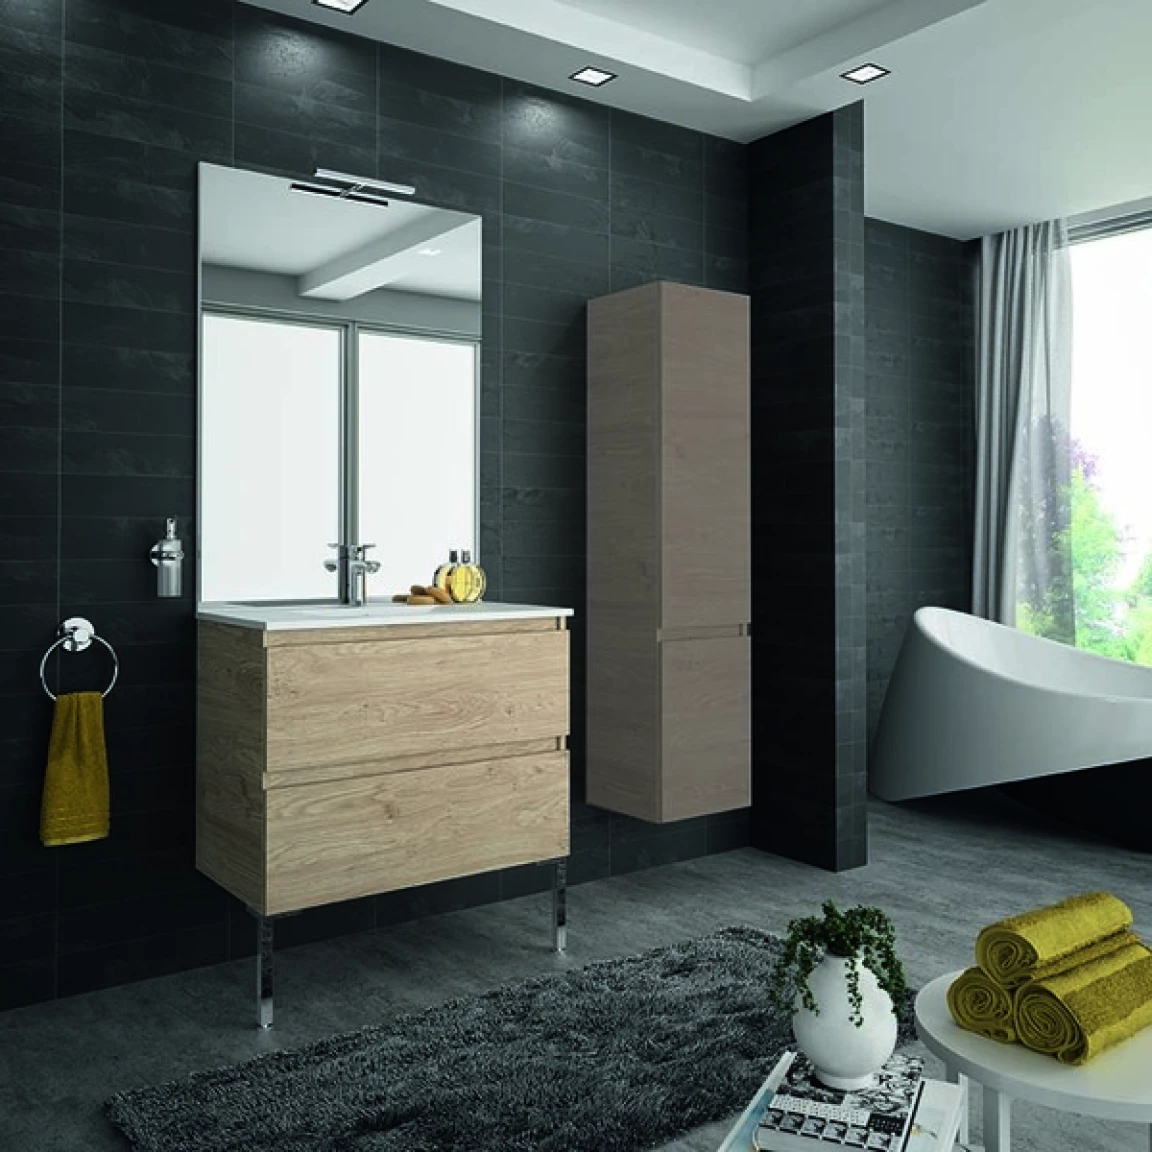 Ensemble meuble de salle de bain CAMPUS 90 cm, plan vasque céramique, profondeur 130 mm, miroir hauteur 60 cm, chêne terra, 2 tiroirs